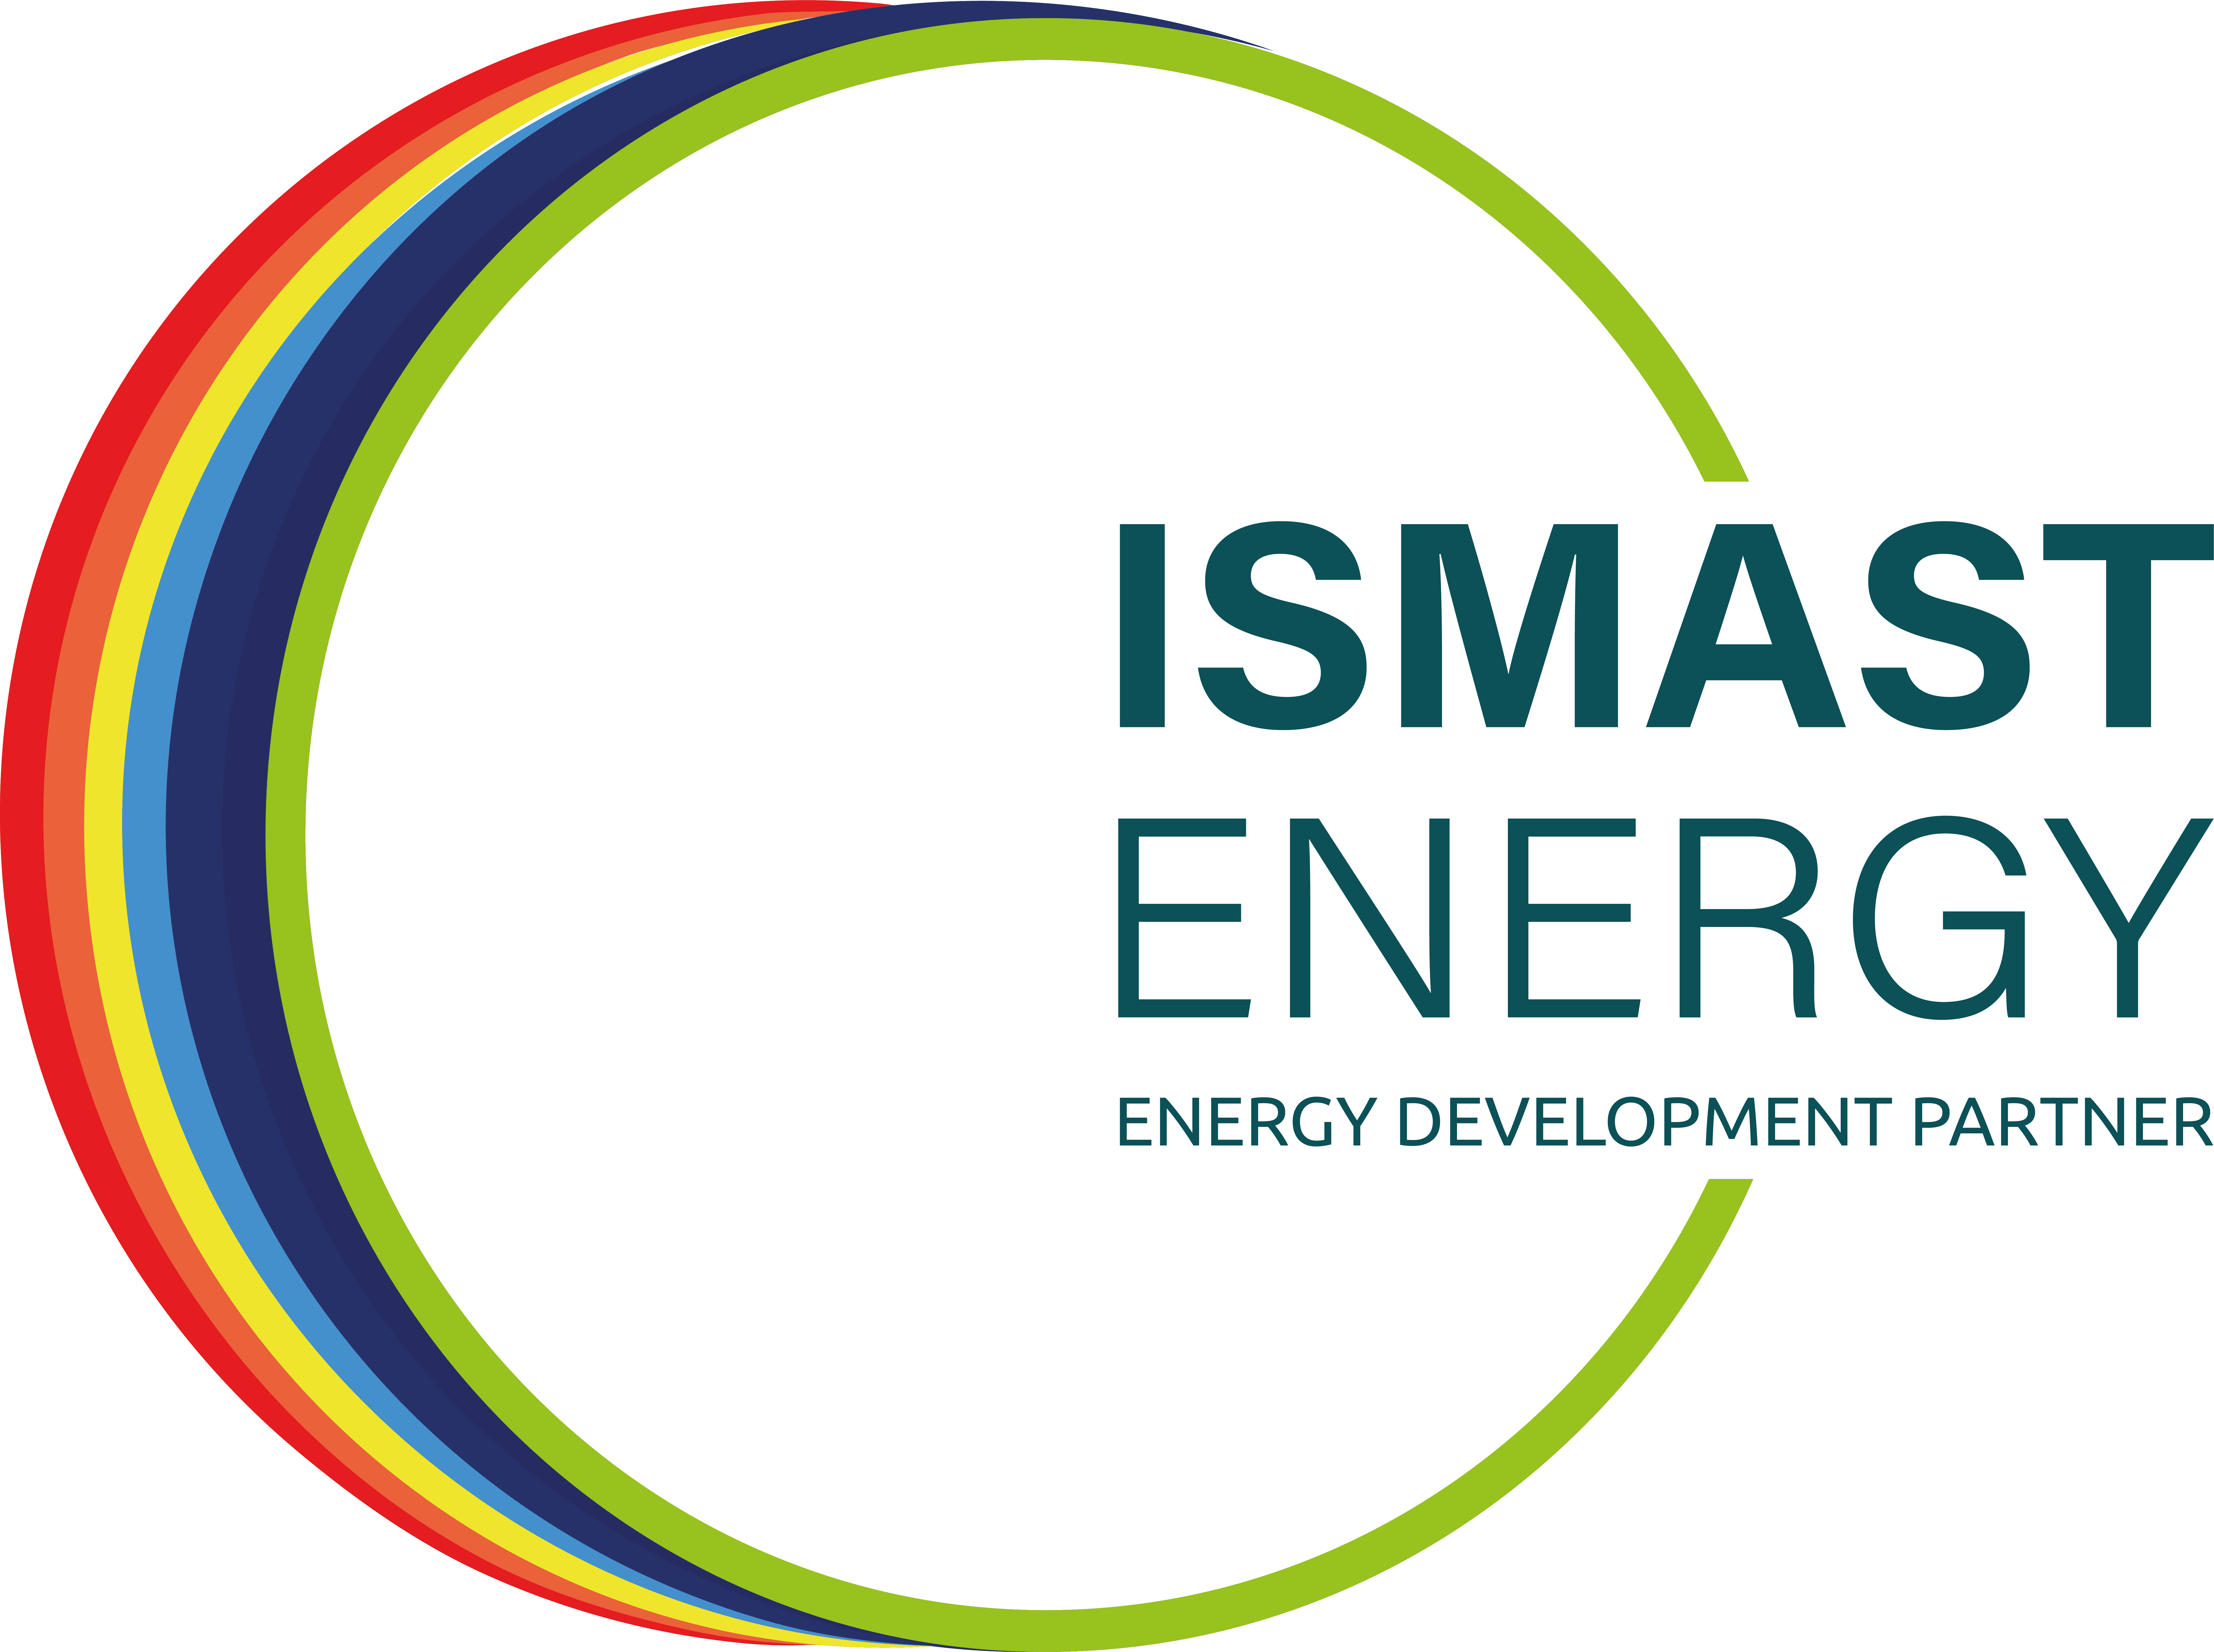 ISMAST Energy